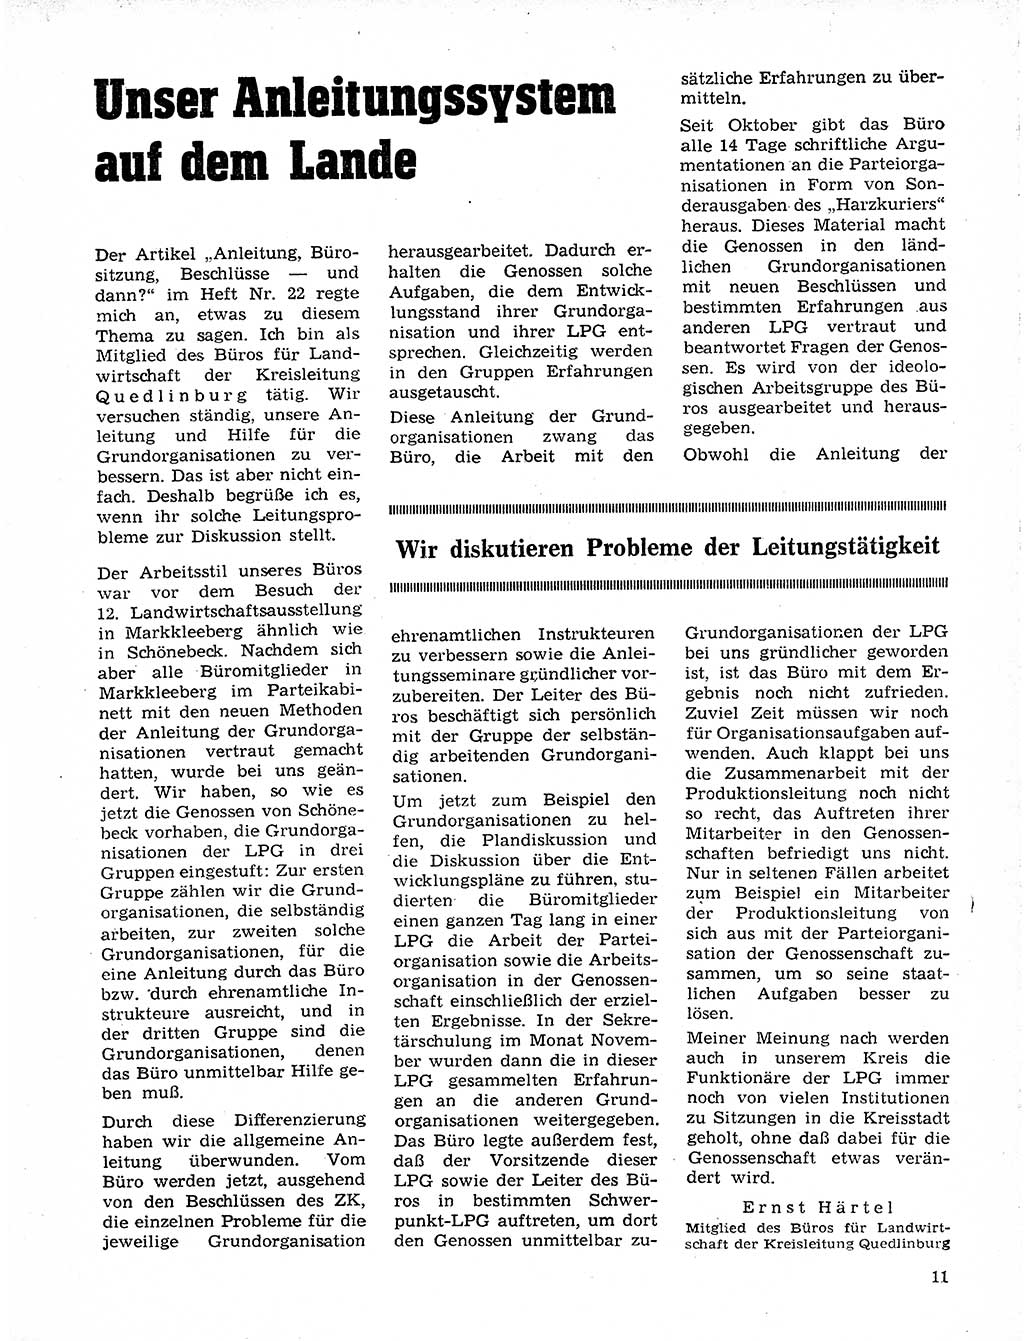 Neuer Weg (NW), Organ des Zentralkomitees (ZK) der SED (Sozialistische Einheitspartei Deutschlands) für Fragen des Parteilebens, 20. Jahrgang [Deutsche Demokratische Republik (DDR)] 1965, Seite 11 (NW ZK SED DDR 1965, S. 11)